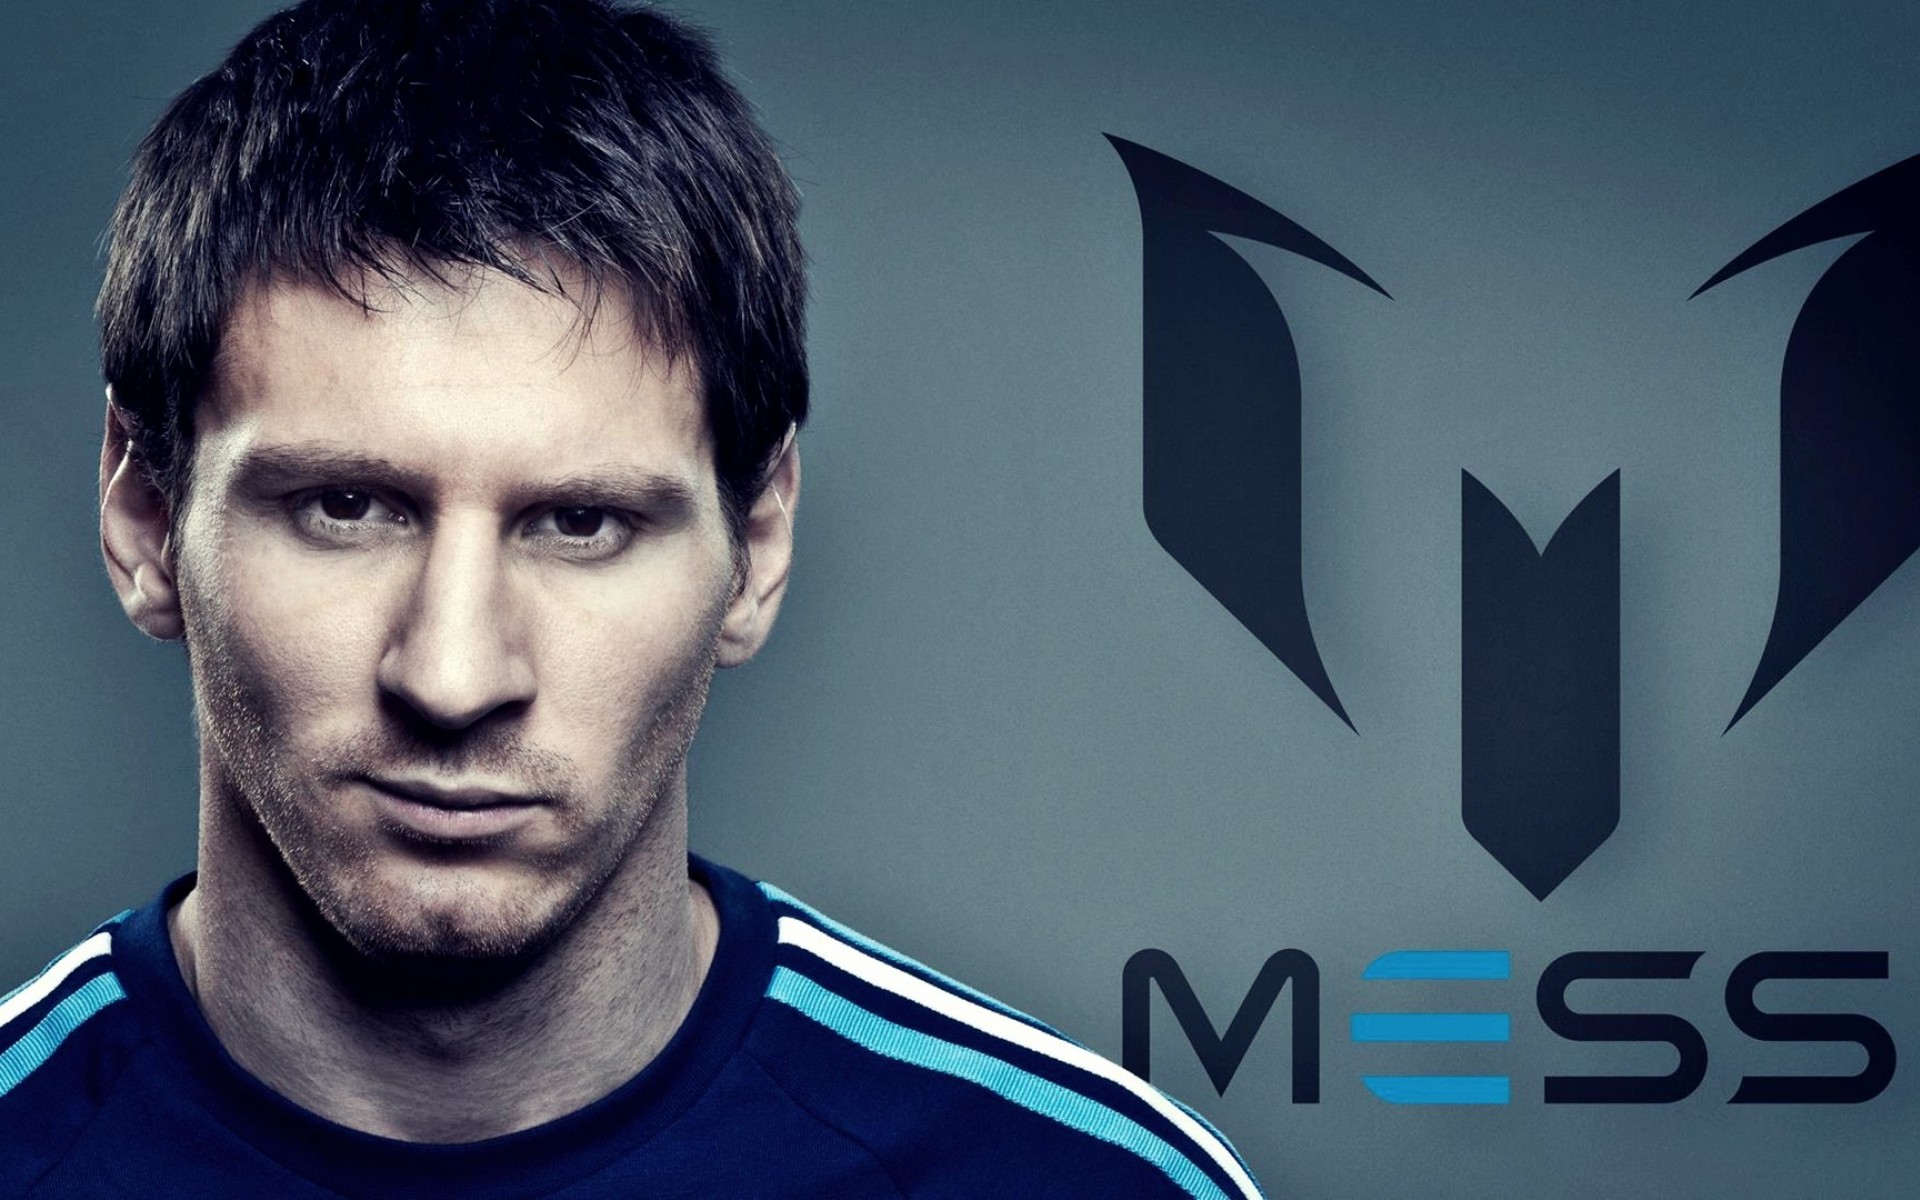 48+] Best Wallpaper of Messi - WallpaperSafari